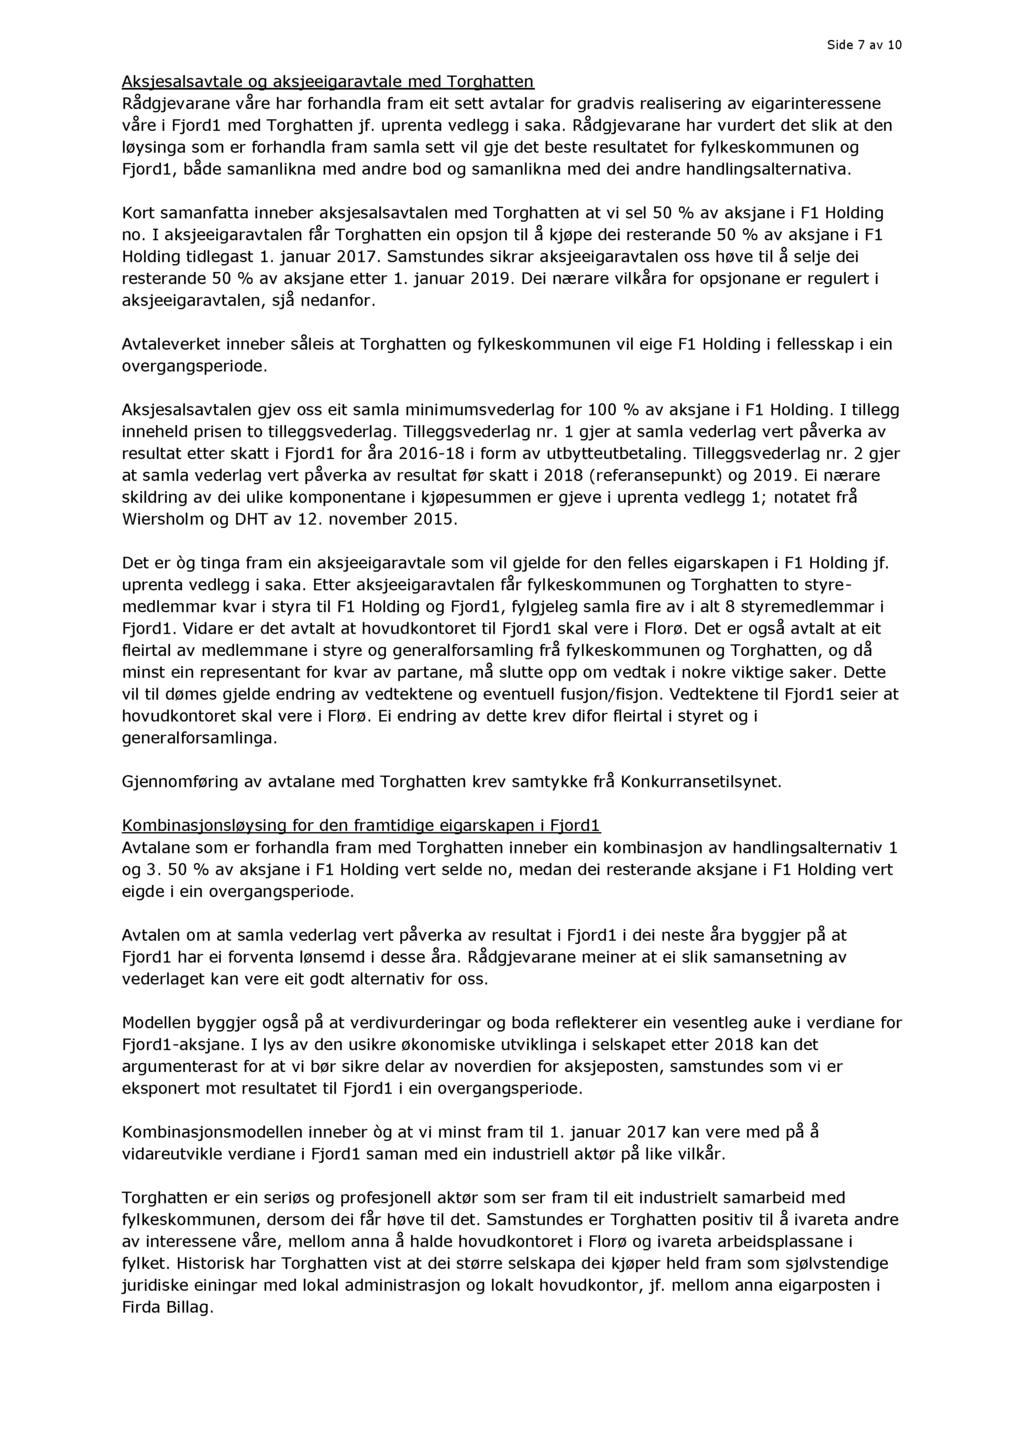 Side 7 av 10 Aksjesalsavtale og aksjeeigaravtale med Torghatten Rådgjevarane våre har forhandla fram eit sett avtalar for gradvis realisering av eigarinteressene våre i Fjord1 m ed Torghatten jf.